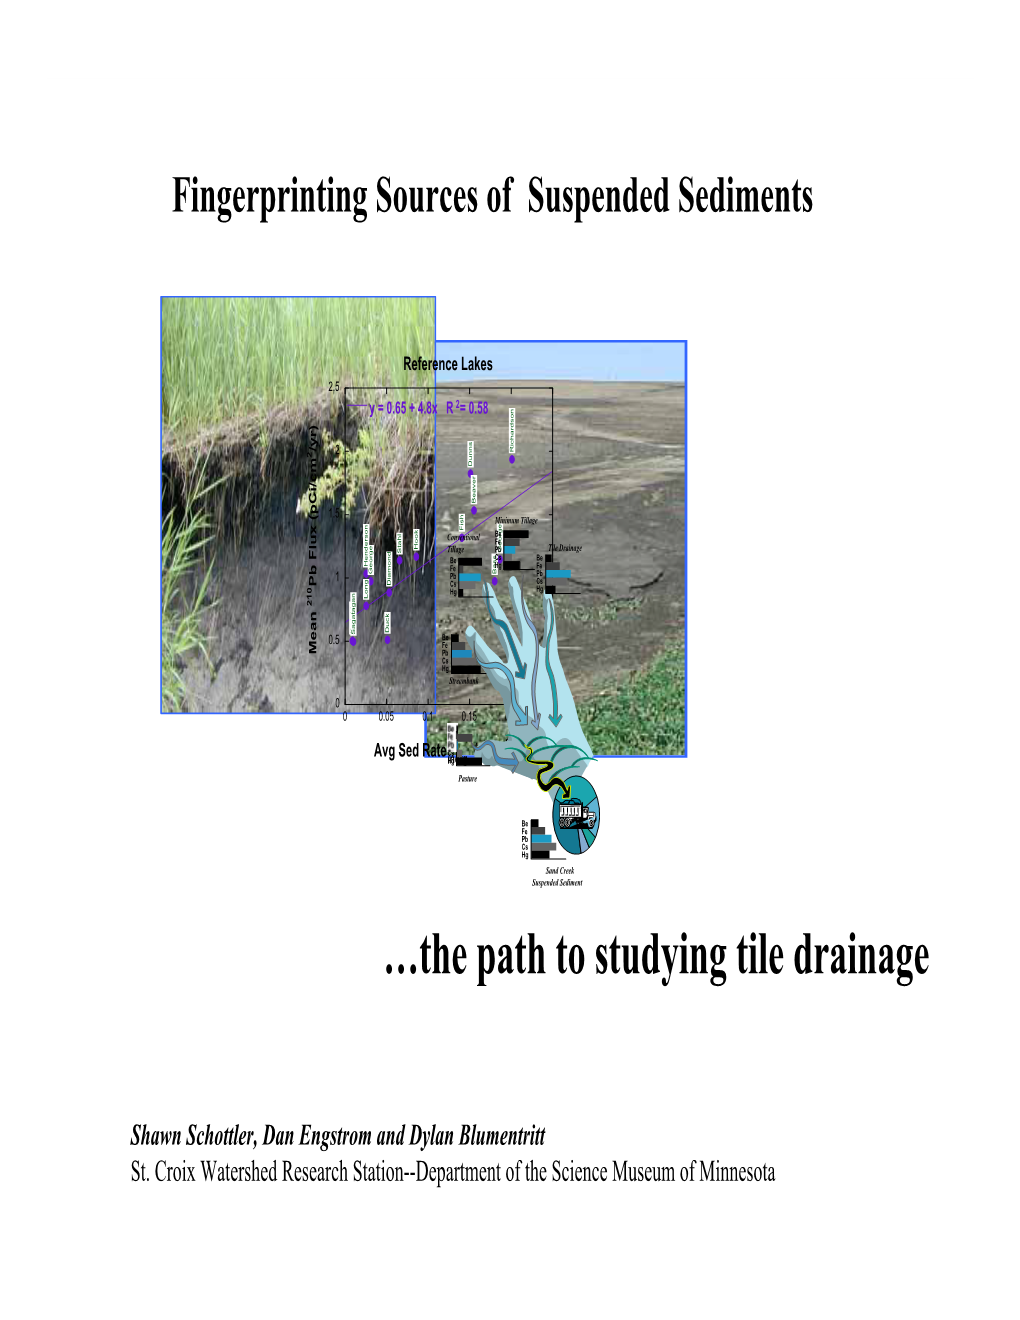 Fingerprinting Sources of Suspended Sediments (Pdf)